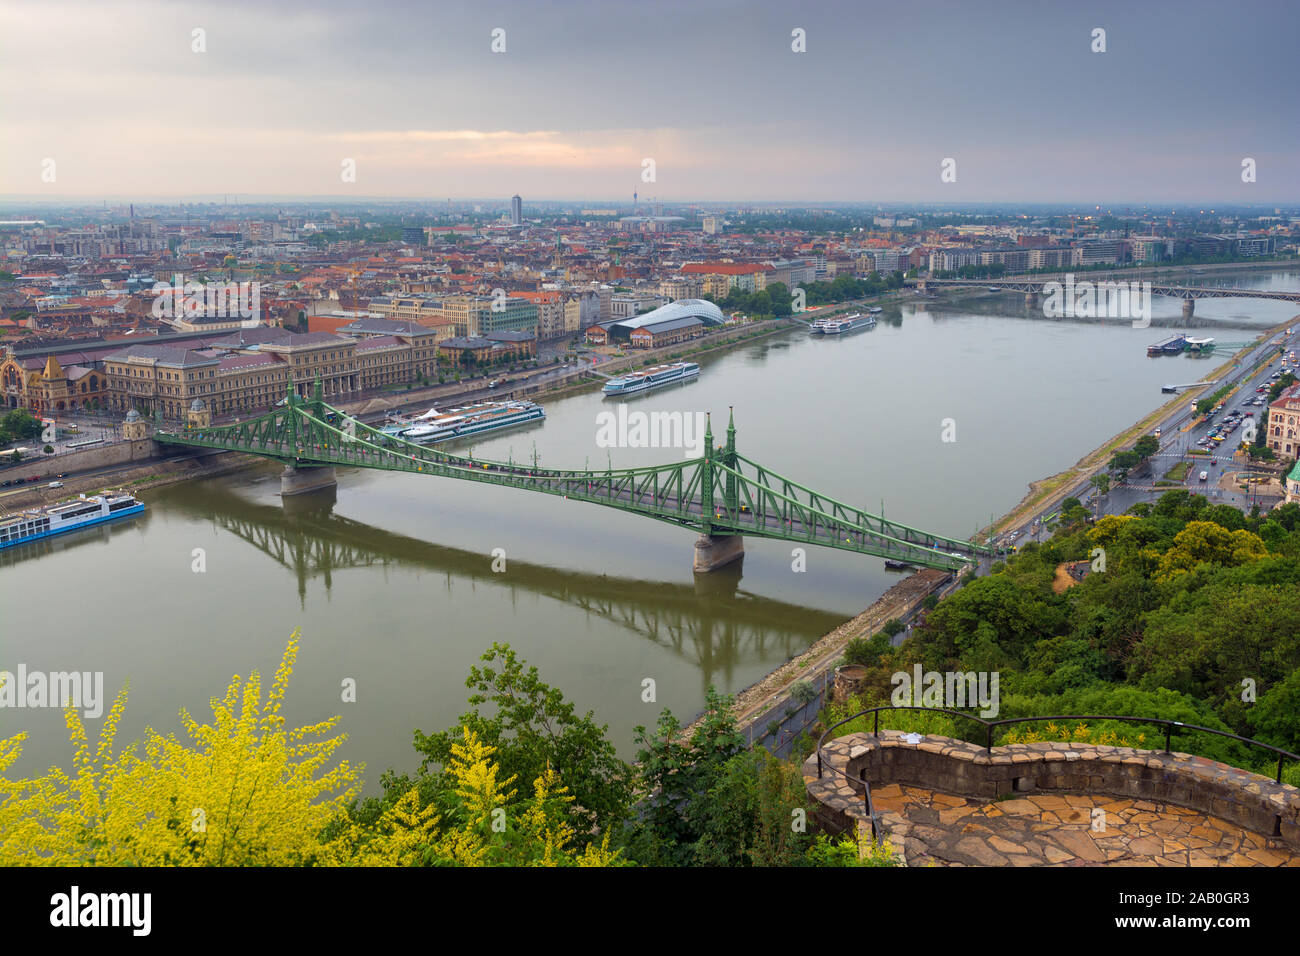 Vista de la ciudad de Budapest. Puente Liberty. Foto de stock